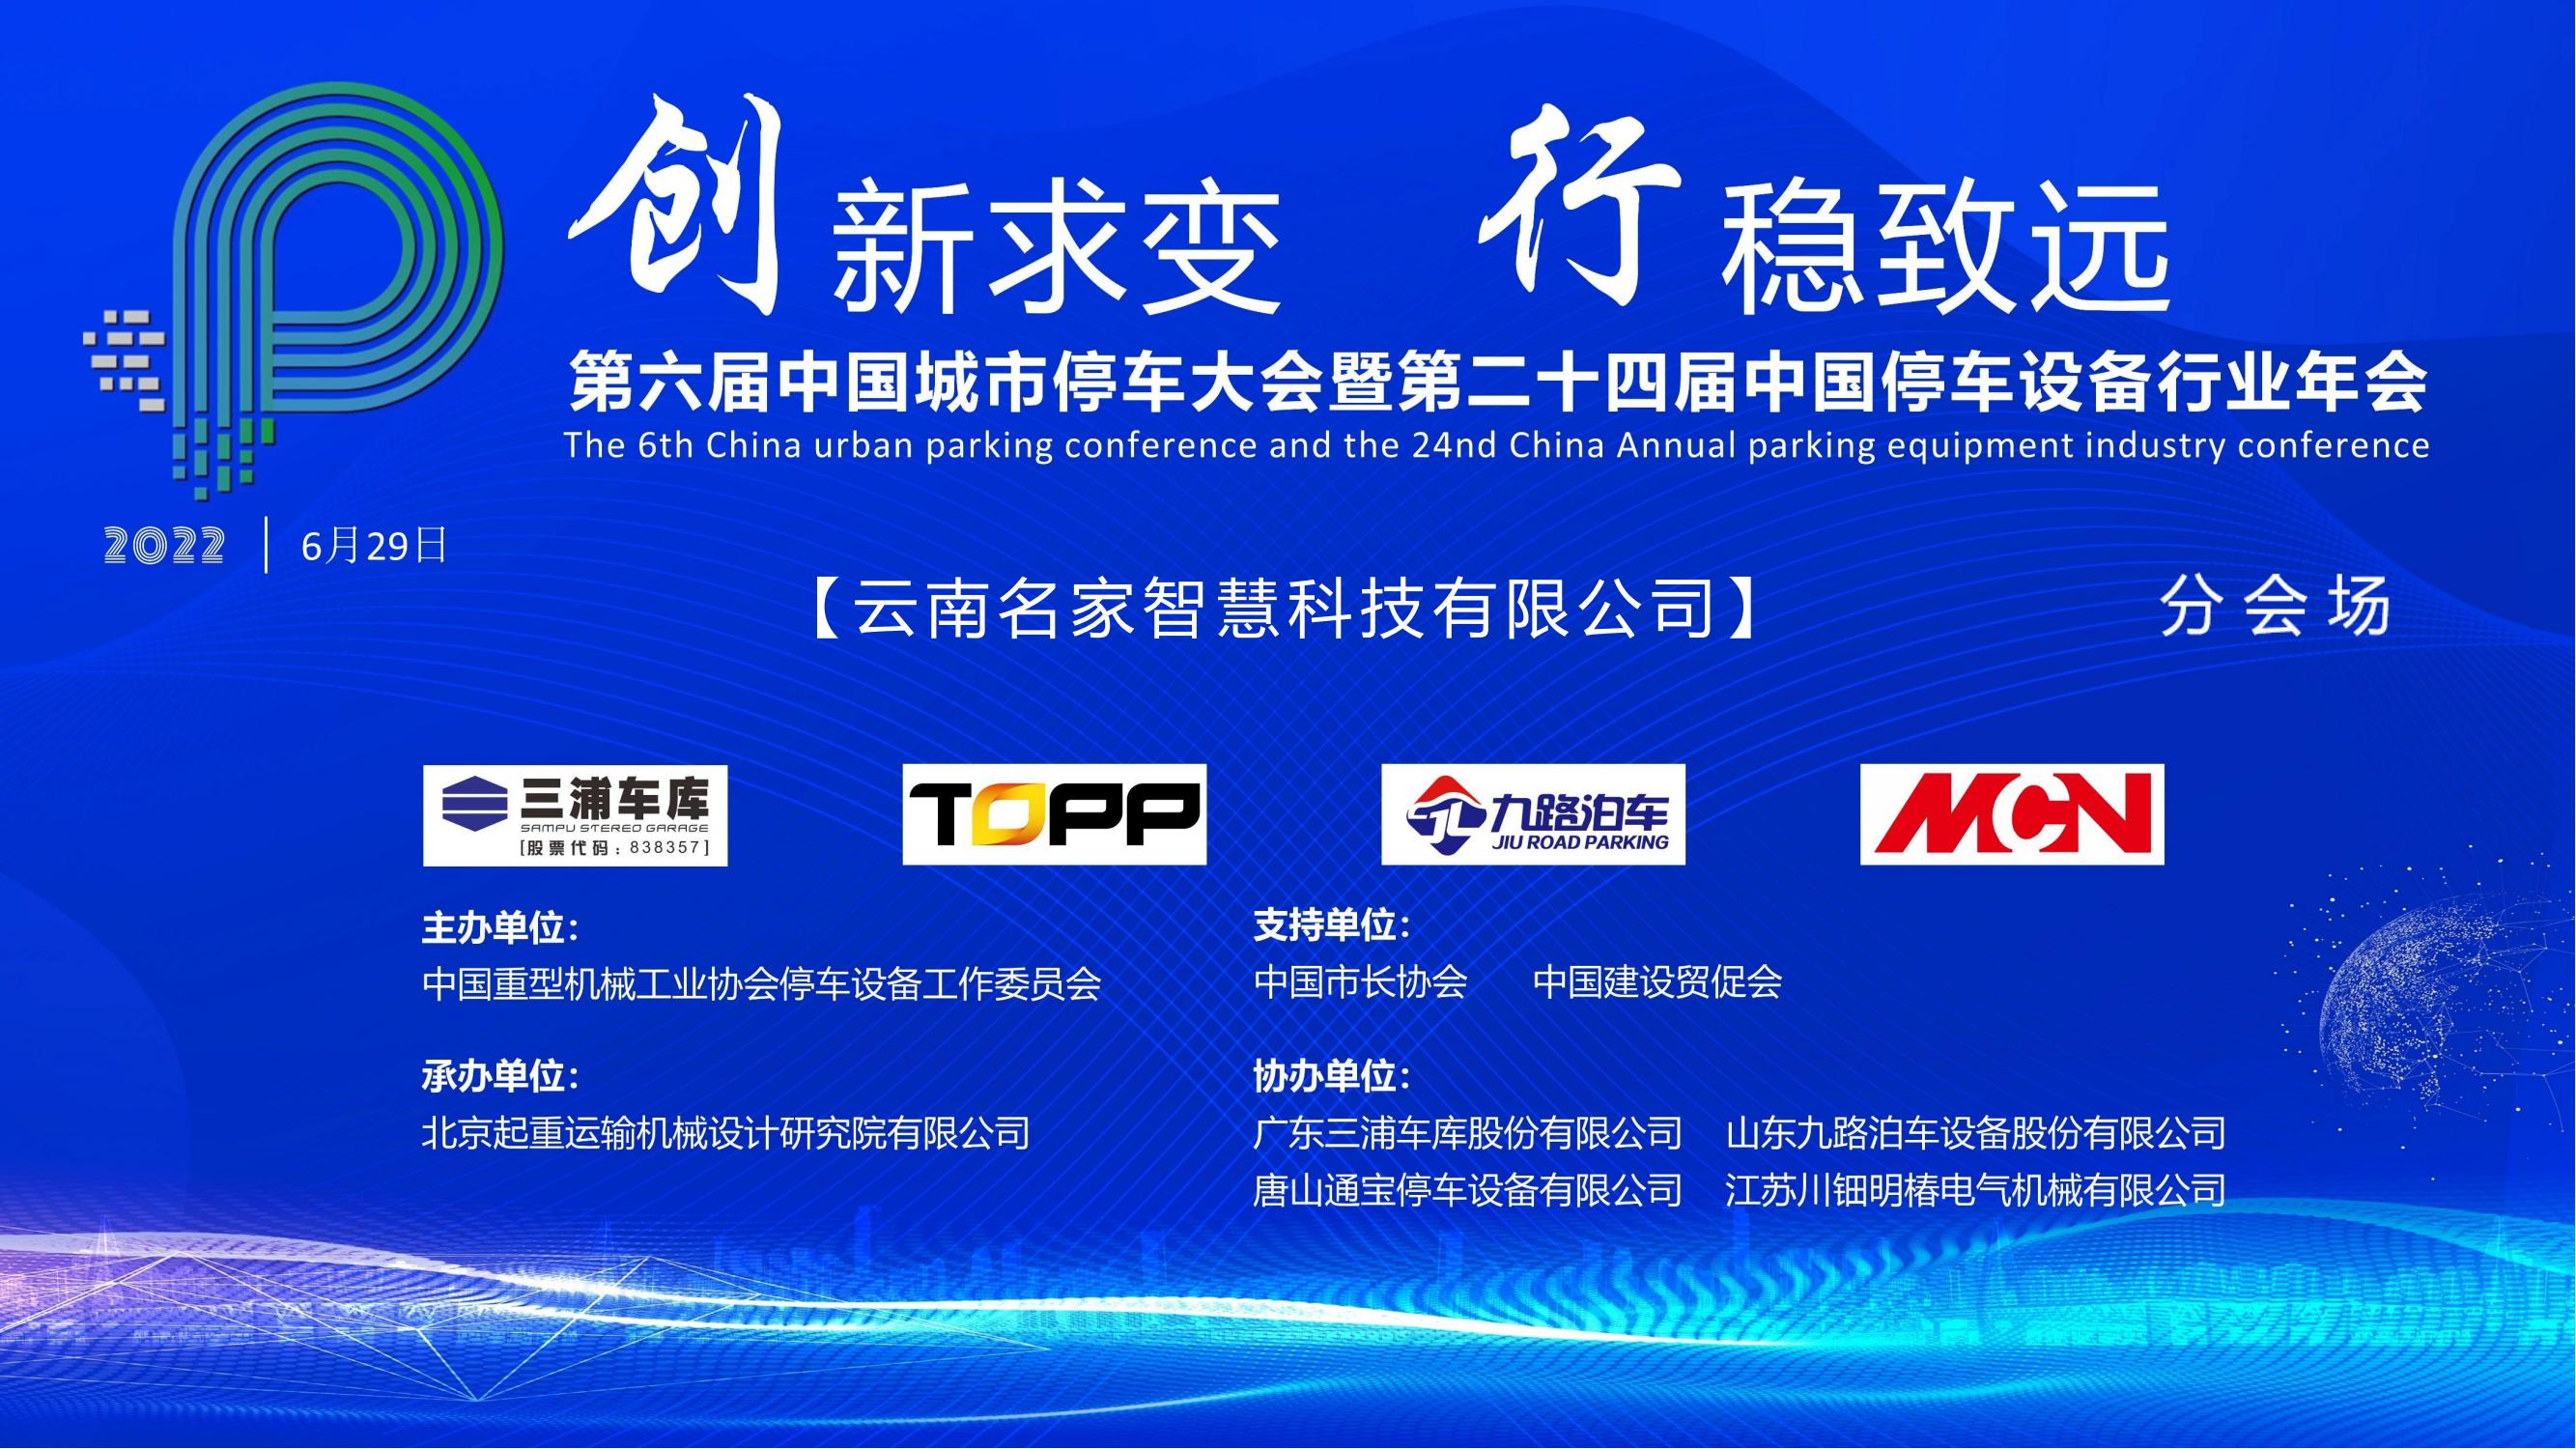 预祝第六届中国城市停车大会暨第二十四届中国停车设备行业年会圆满召开